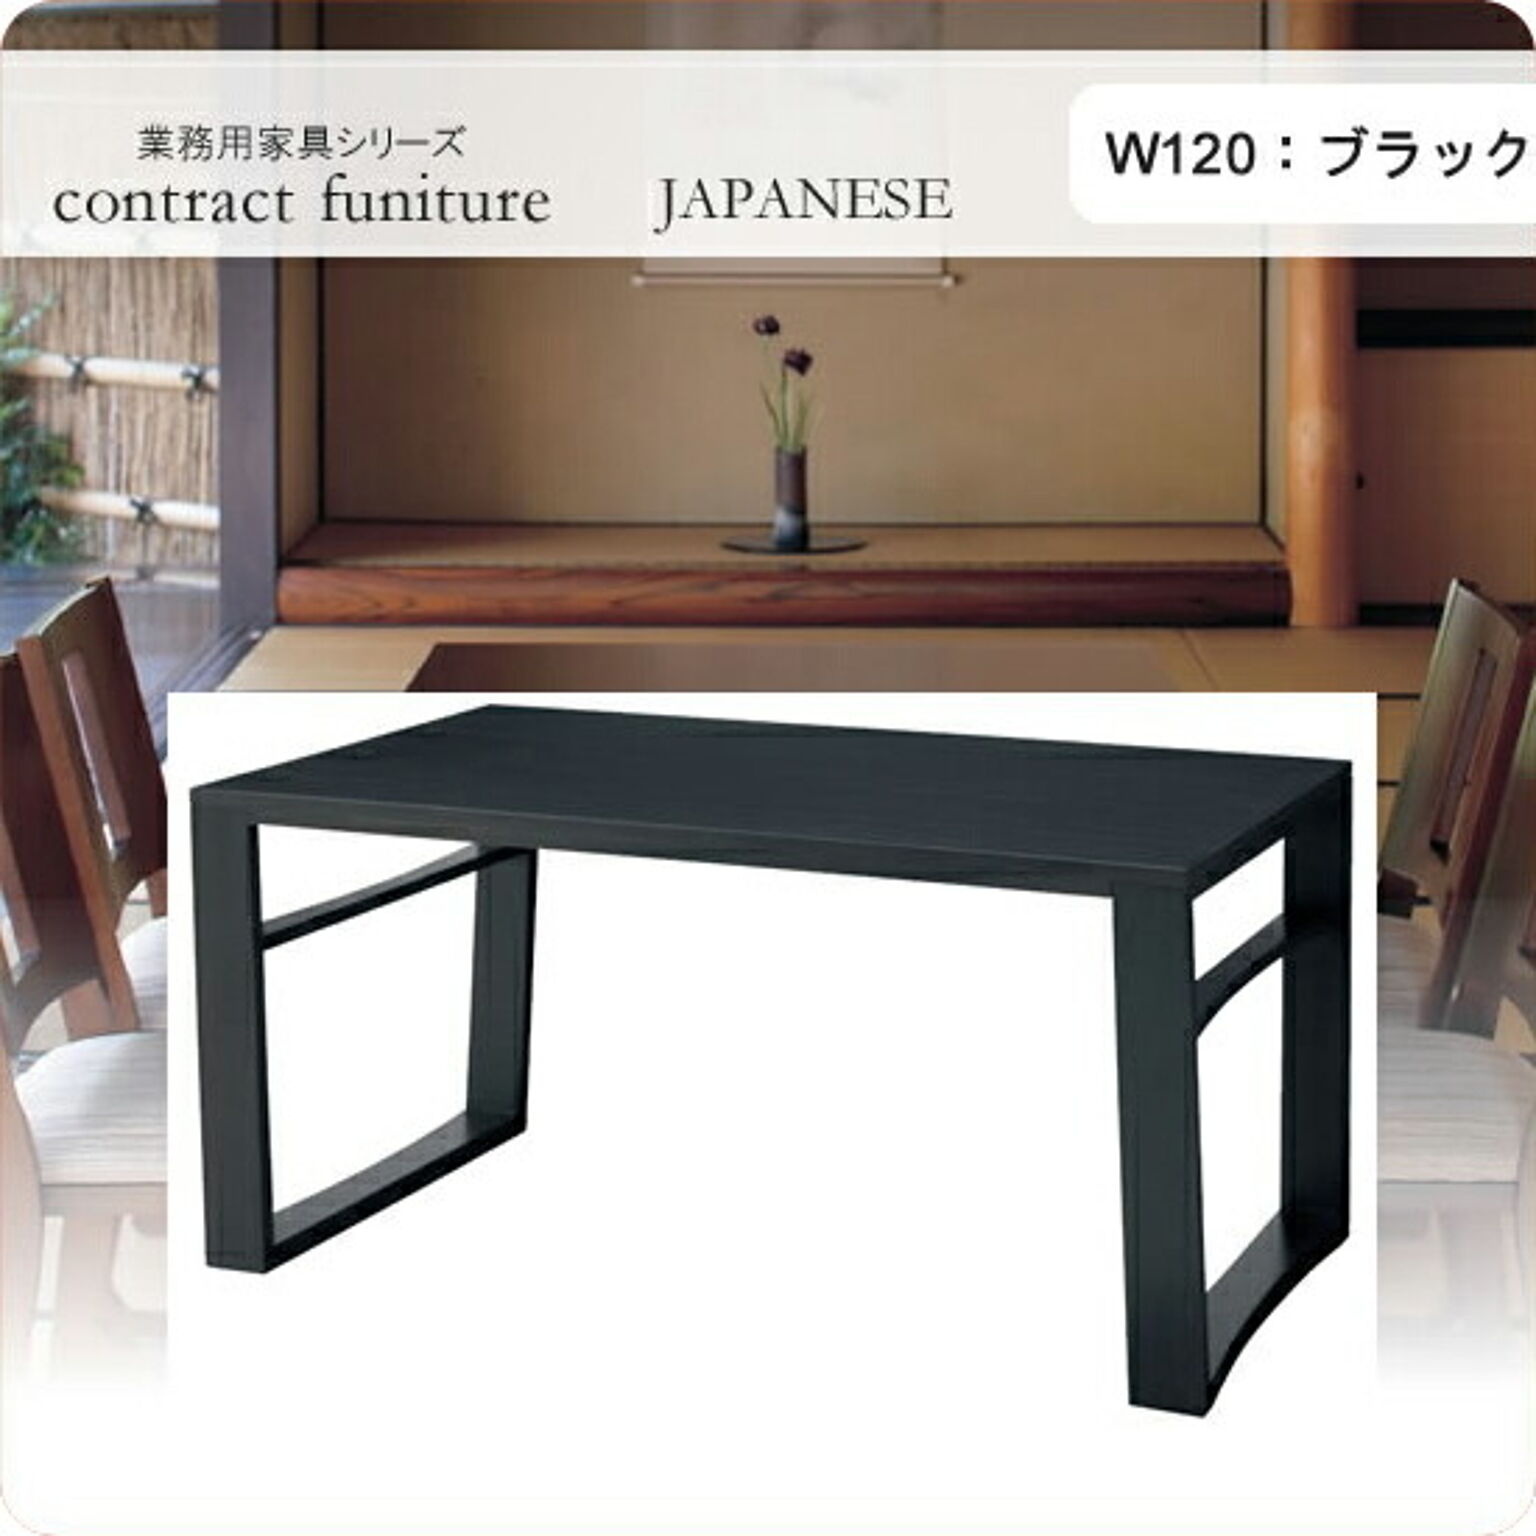 ダイニングテーブル 120 羽戸山 ブラック 業務用家具シリーズ JAPANESE（ジャパニーズ）  店舗 施設 コントラクト